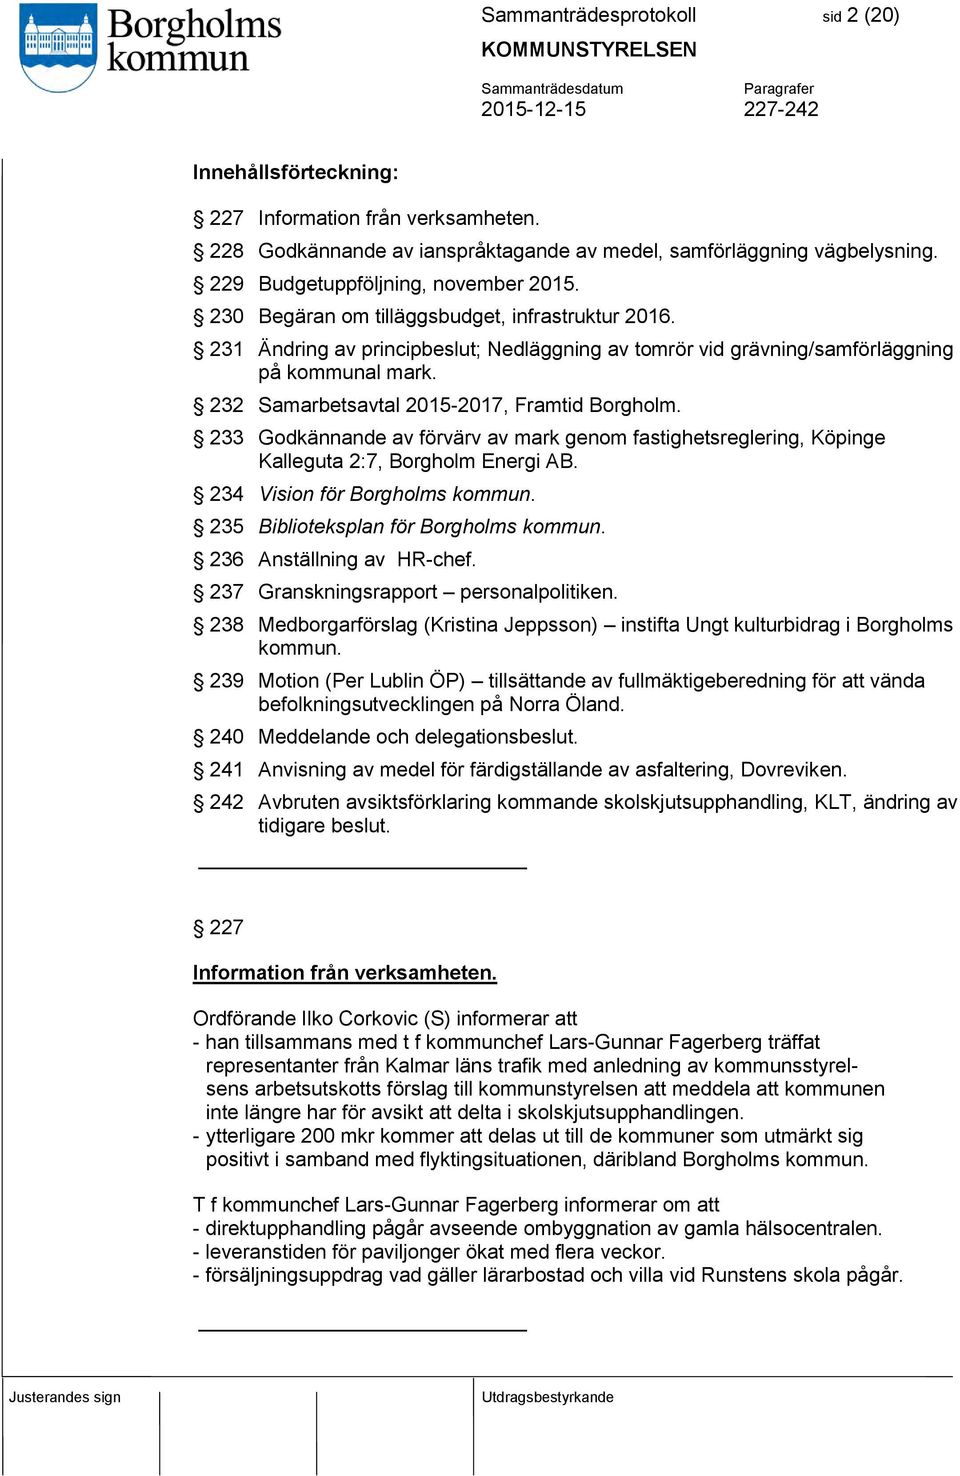 232 Samarbetsavtal 2015-2017, Framtid Borgholm. 233 Godkännande av förvärv av mark genom fastighetsreglering, Köpinge Kalleguta 2:7, Borgholm Energi AB. 234 Vision för Borgholms kommun.